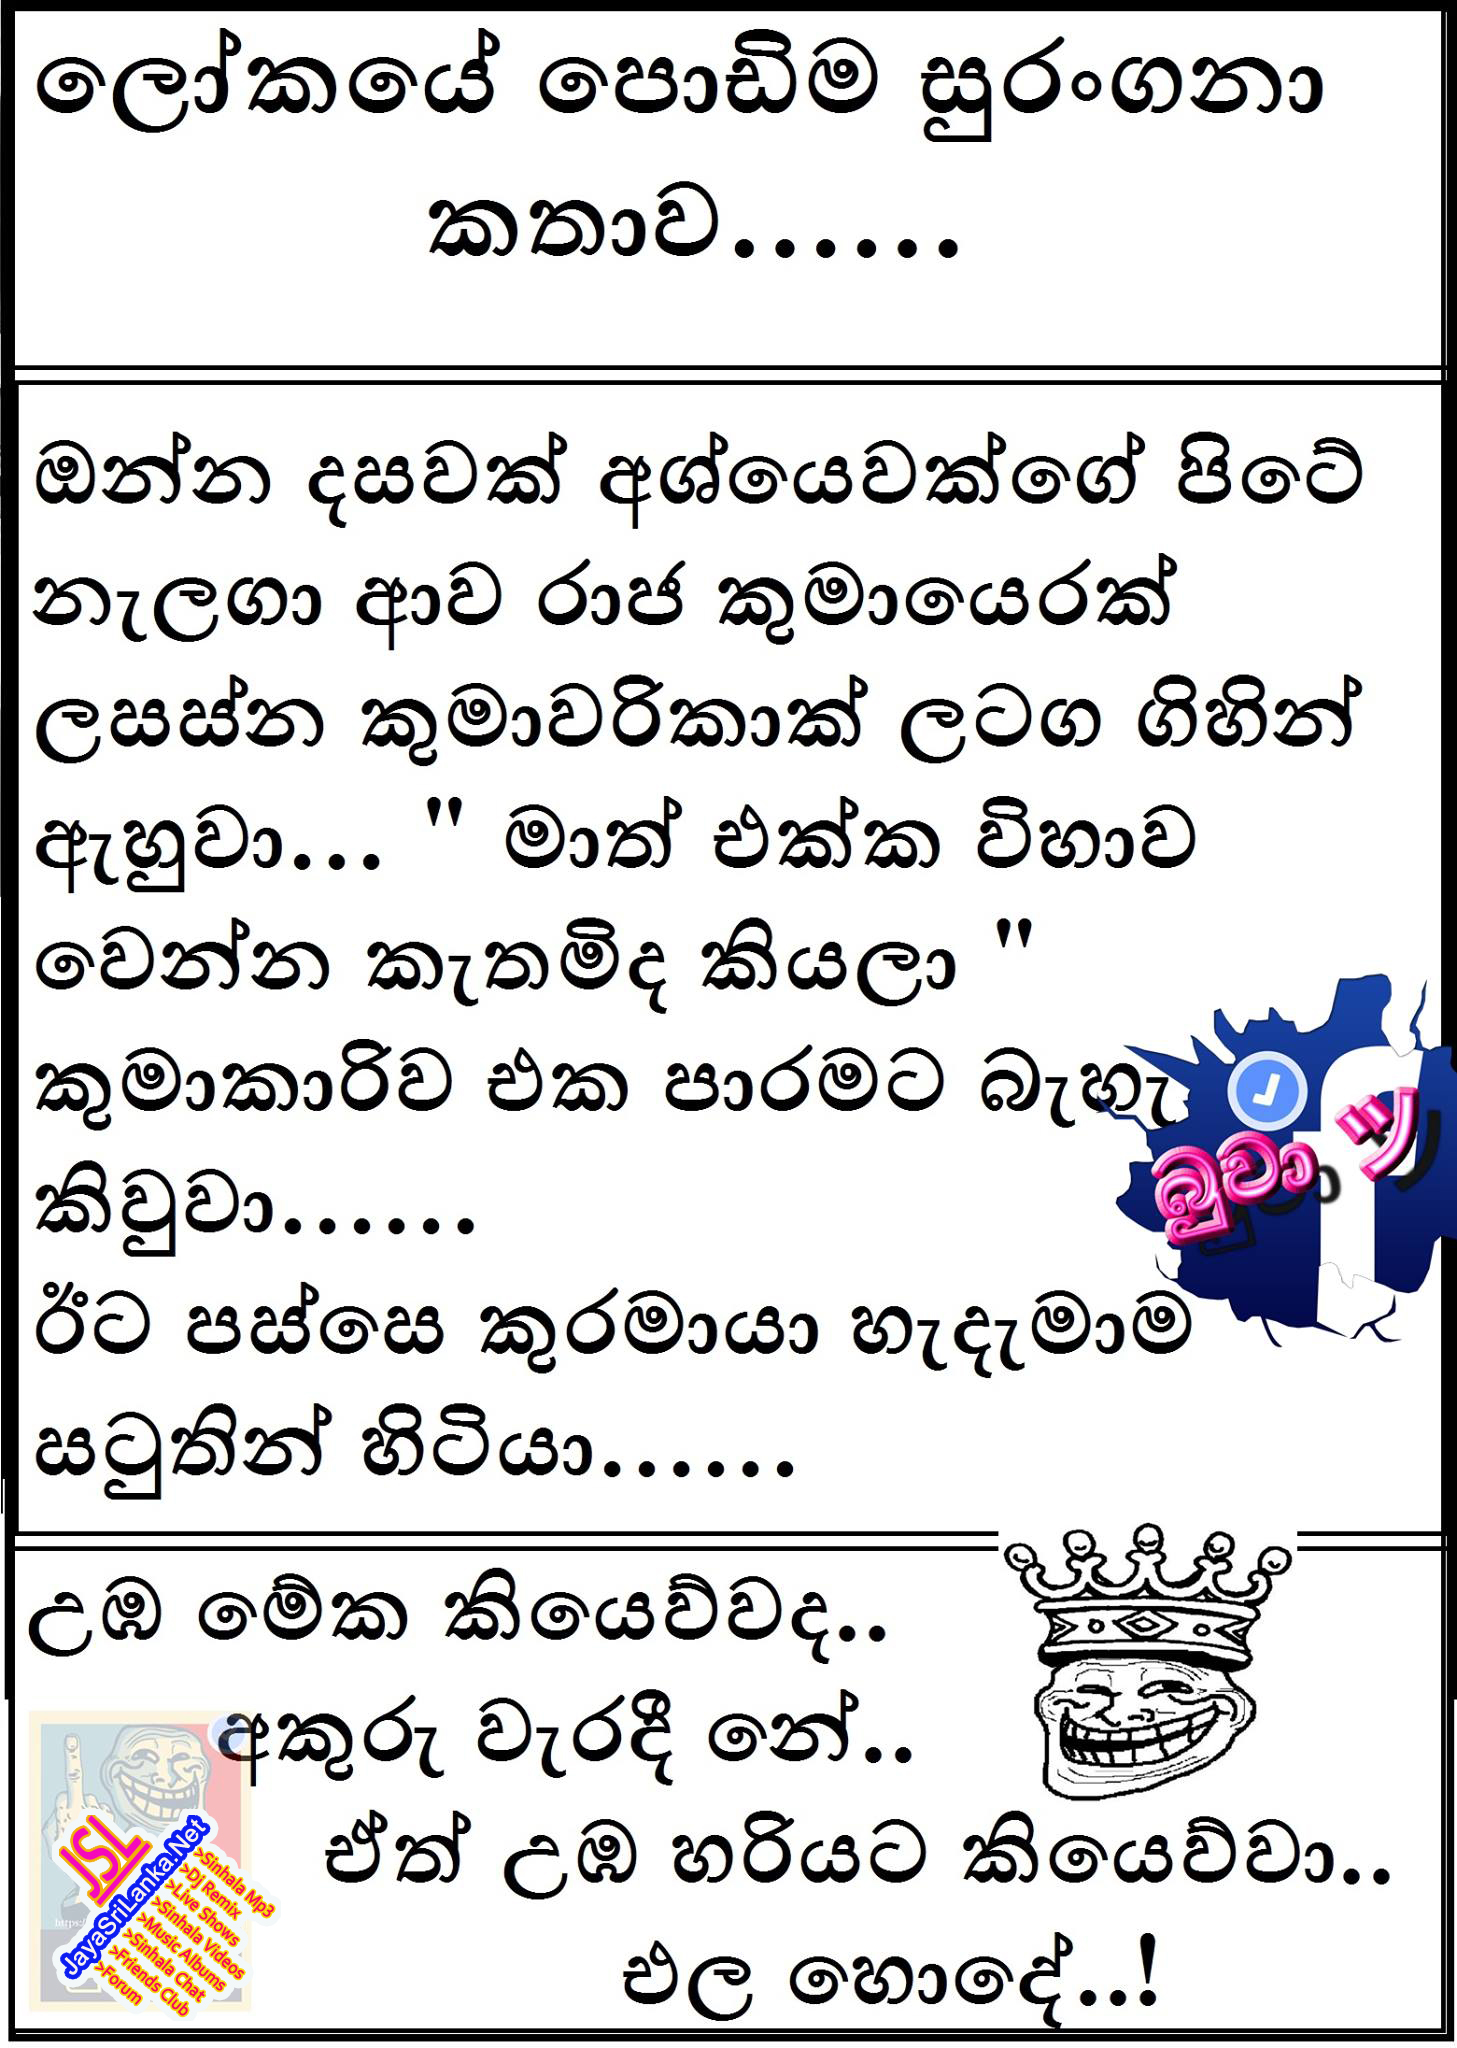 Download Sinhala Joke 233 Photo - Jokes For Friends In Sinhala - 1457x2048  Wallpaper 